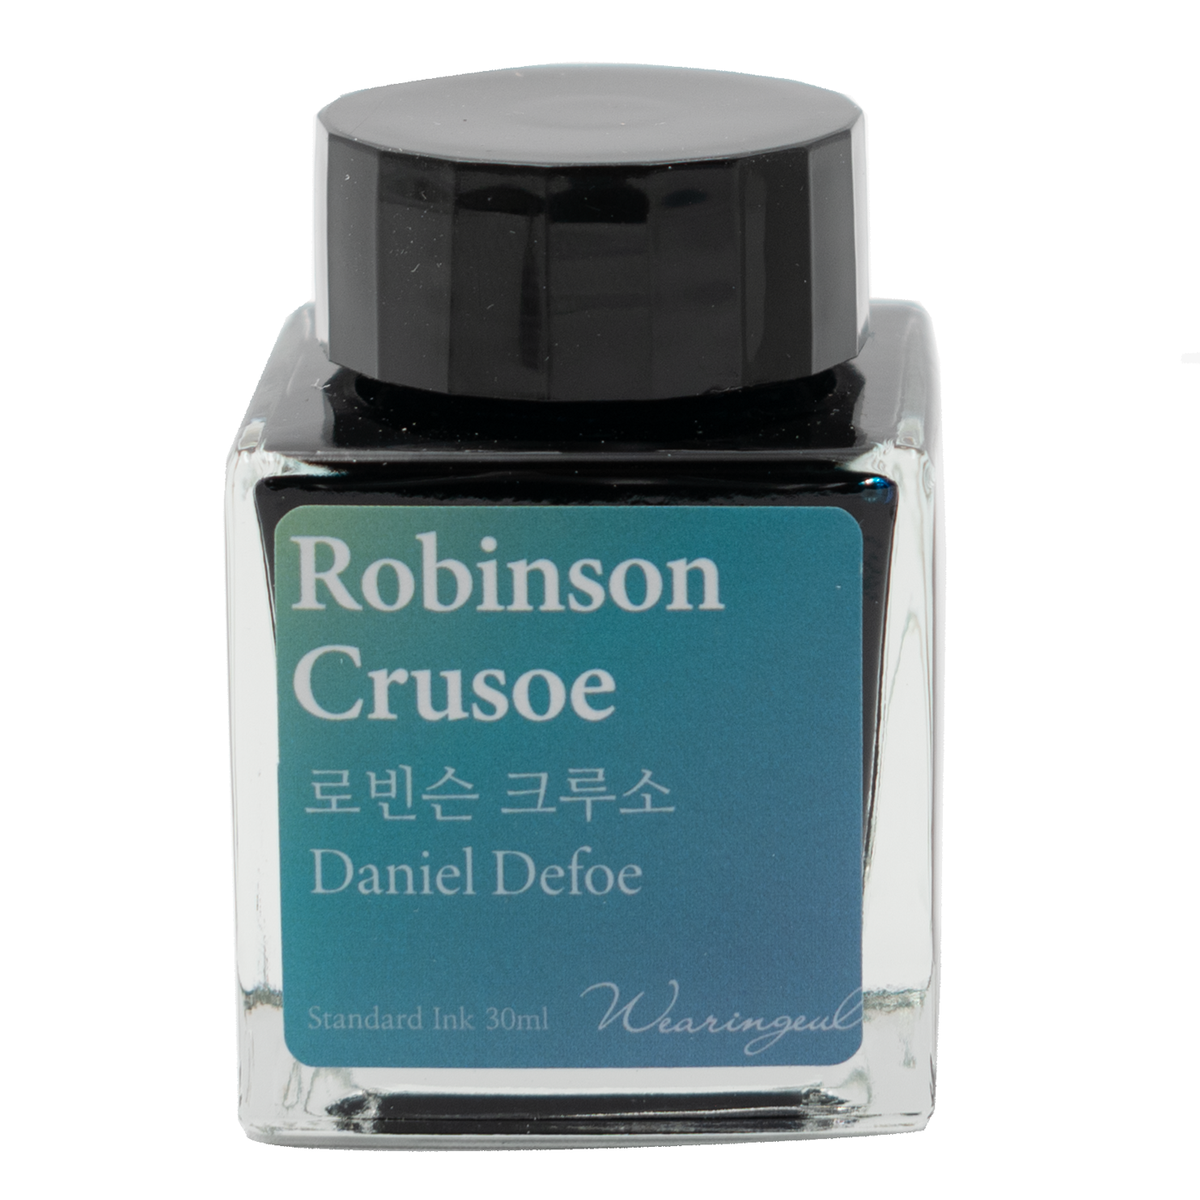 Wearingeul - Daniel Defoe - Robinson Crusoe